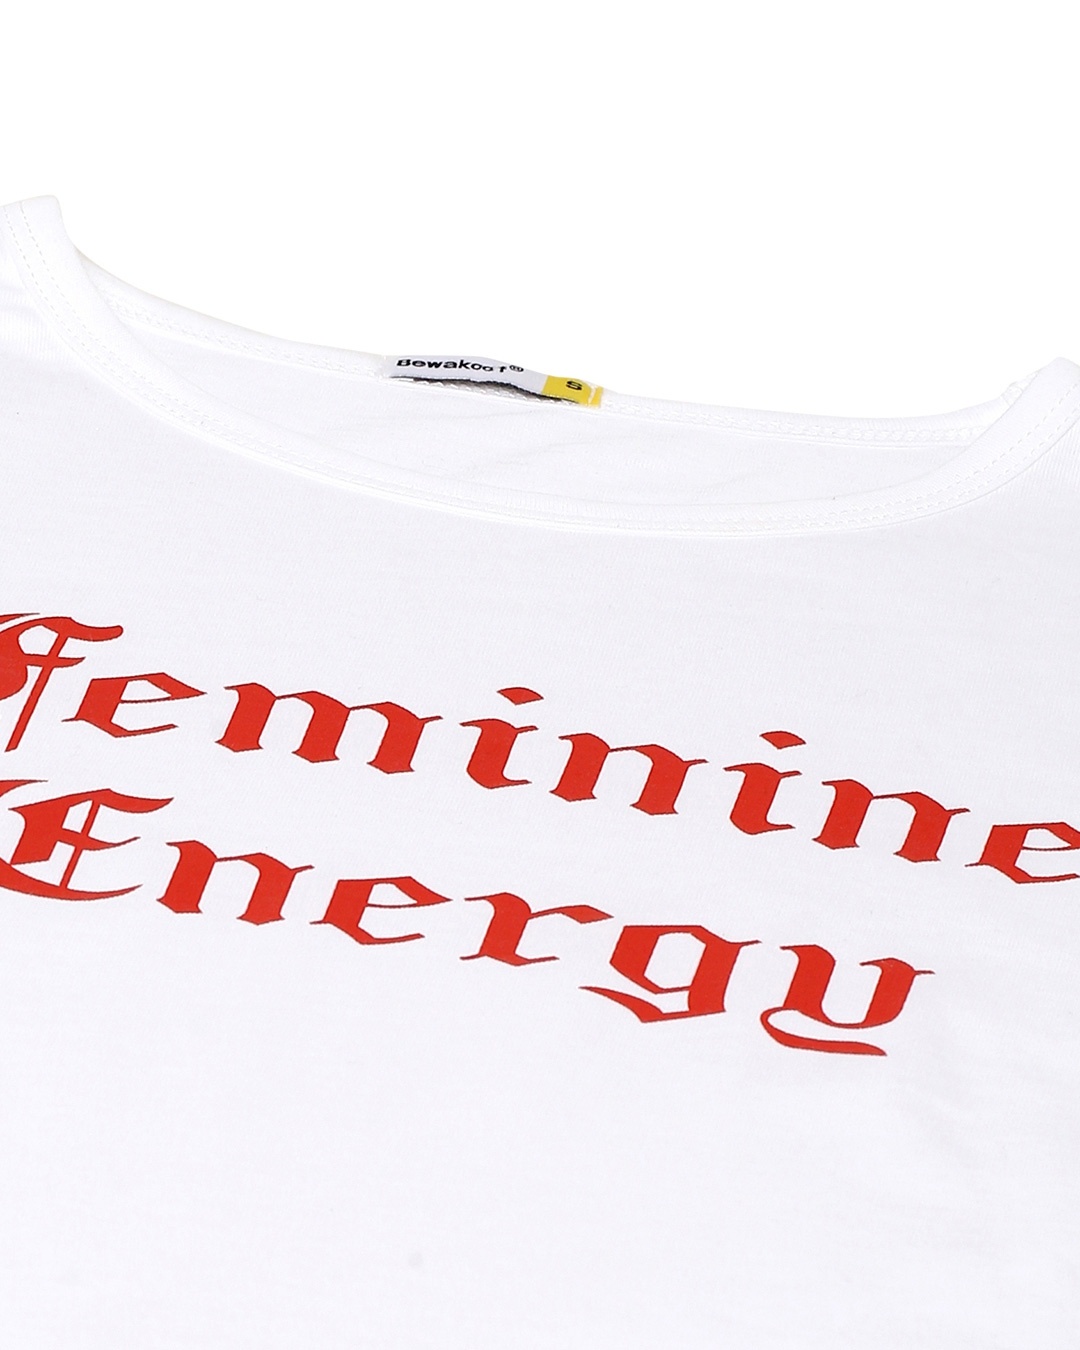 Shop Feminine Energy Round Neck 3/4 Sleeve T-Shirt